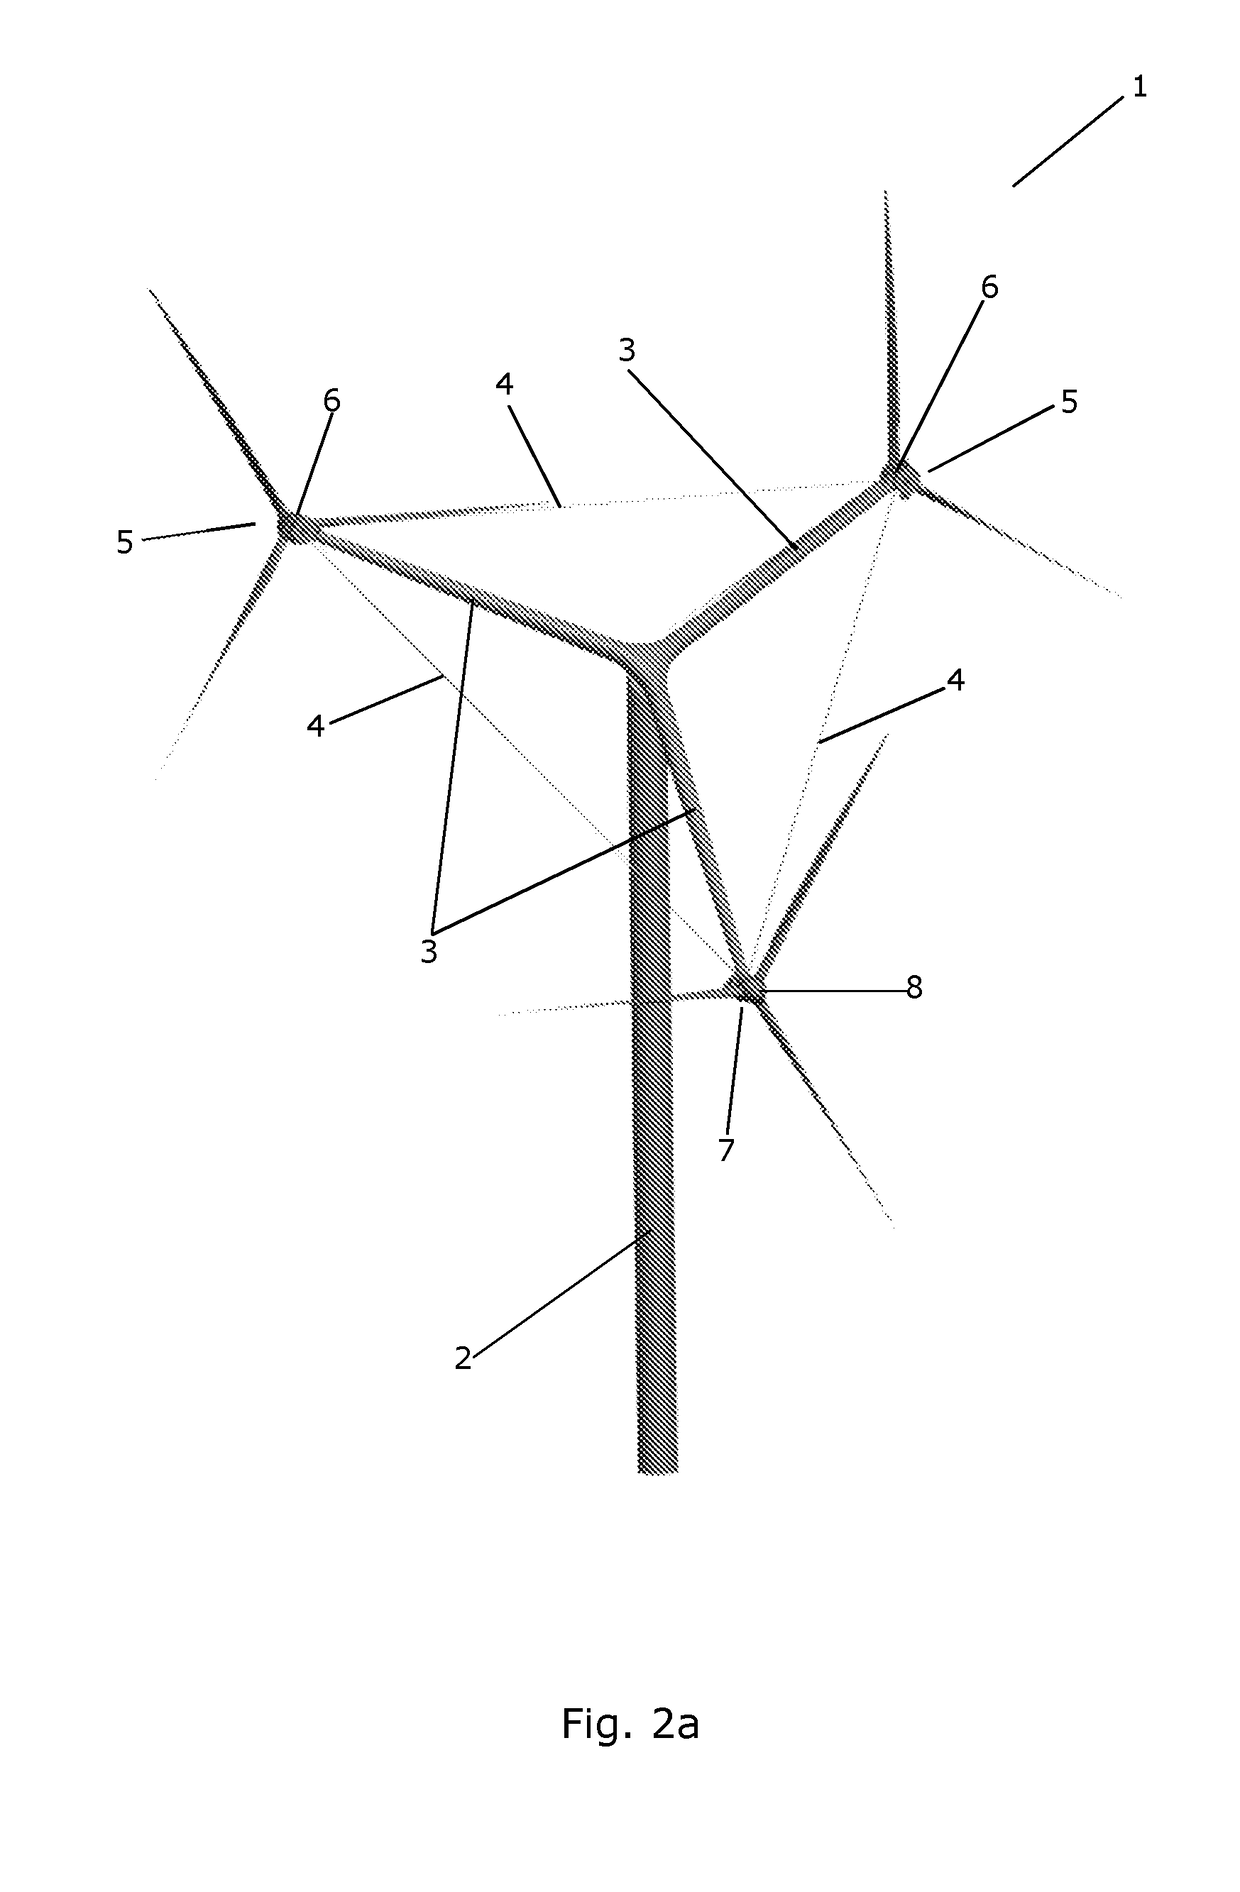 A multirotor wind turbine